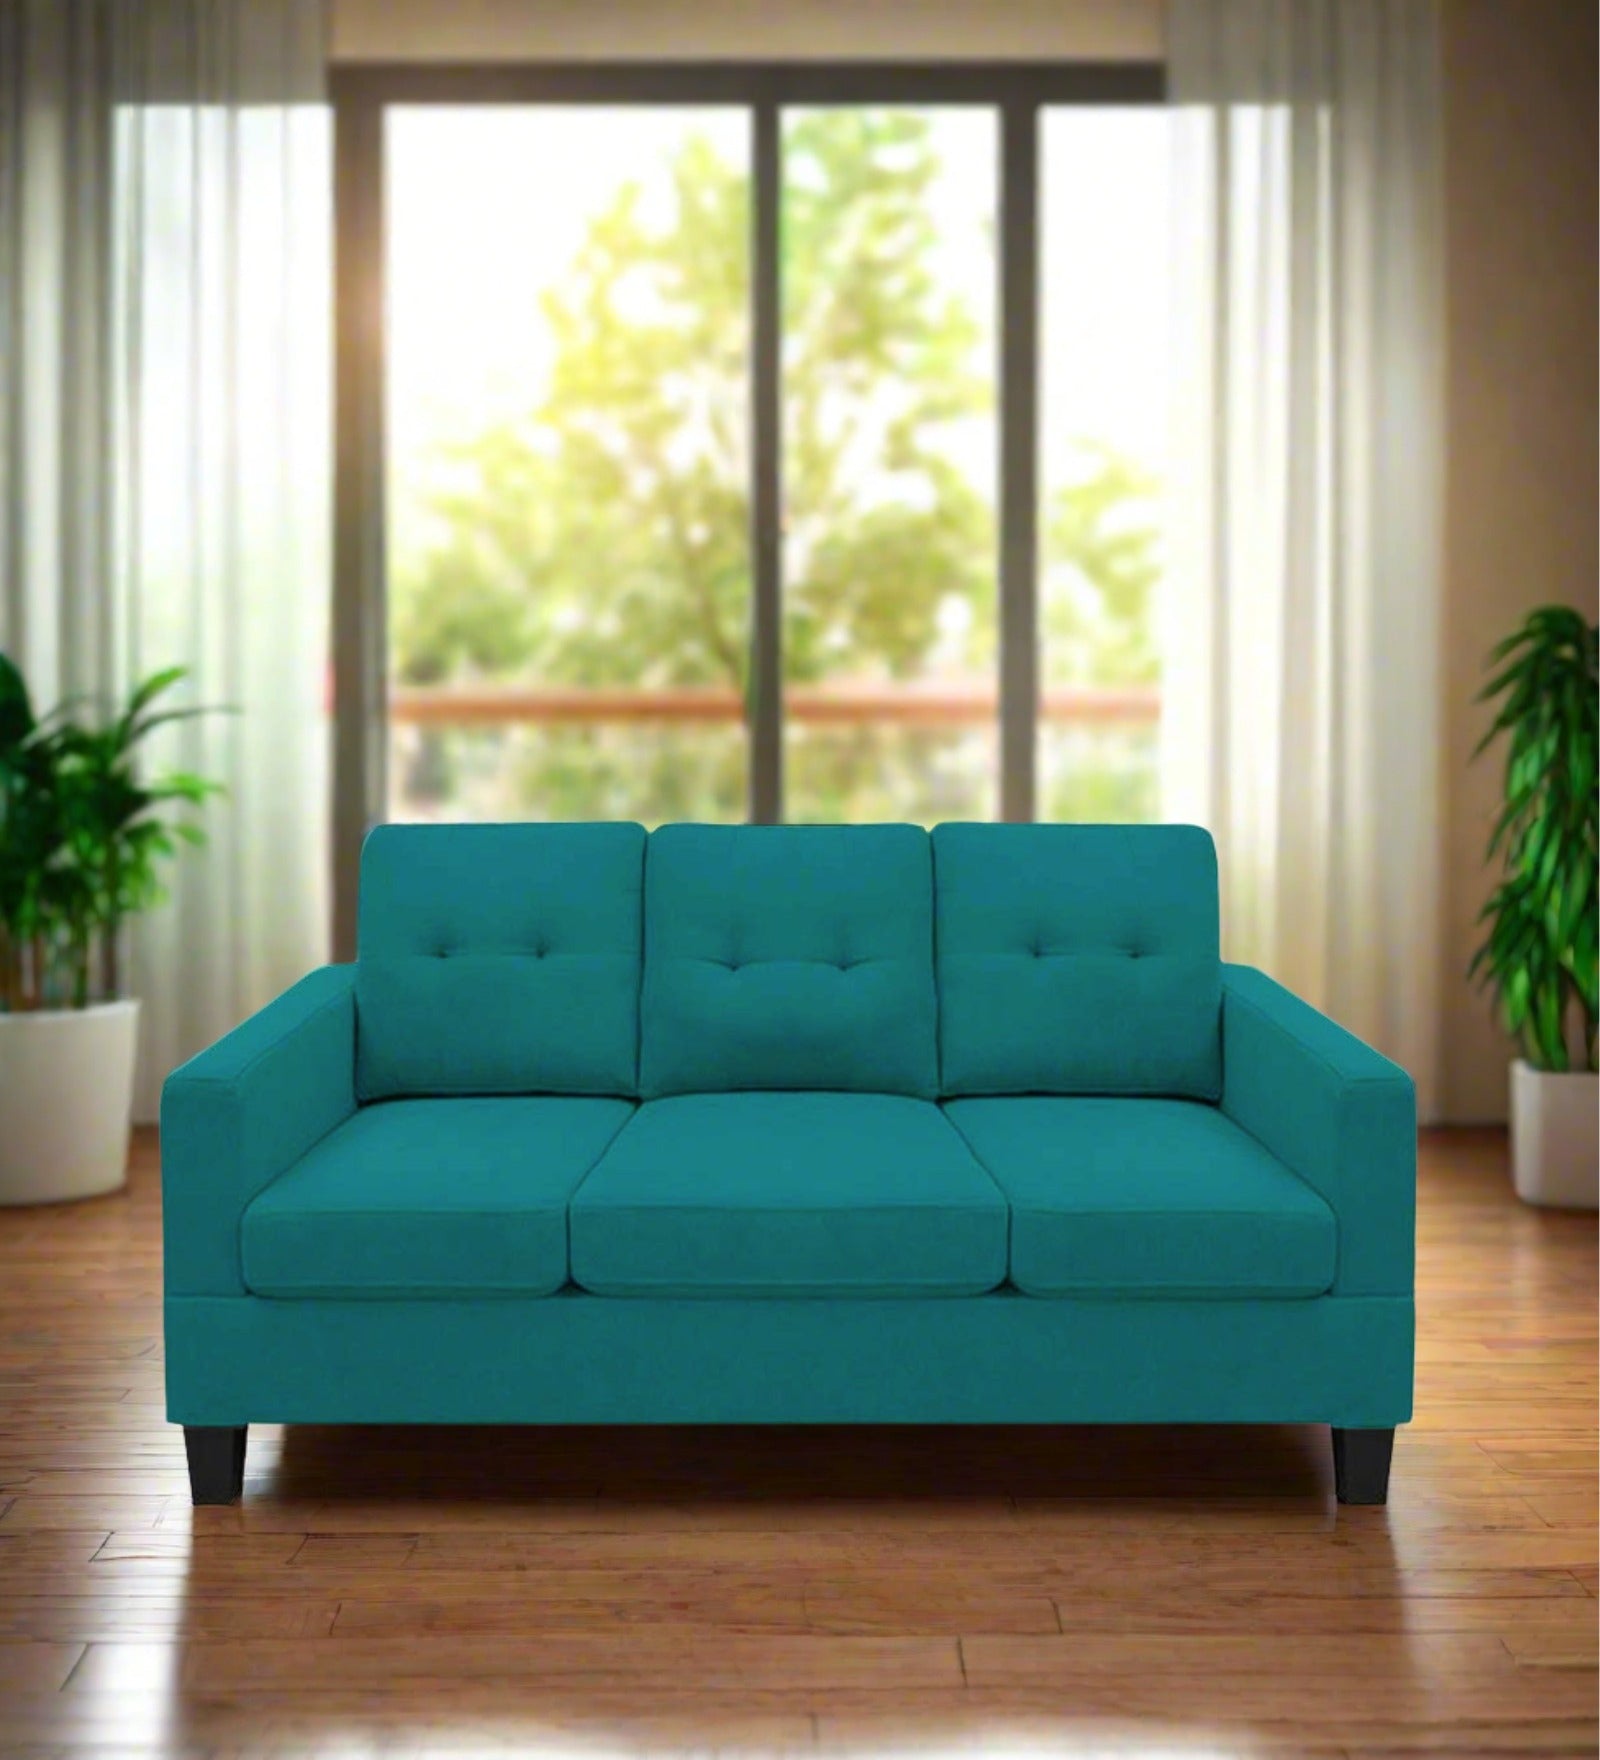 Thomas Fabric 3 Seater Sofa in Sea Green Colour